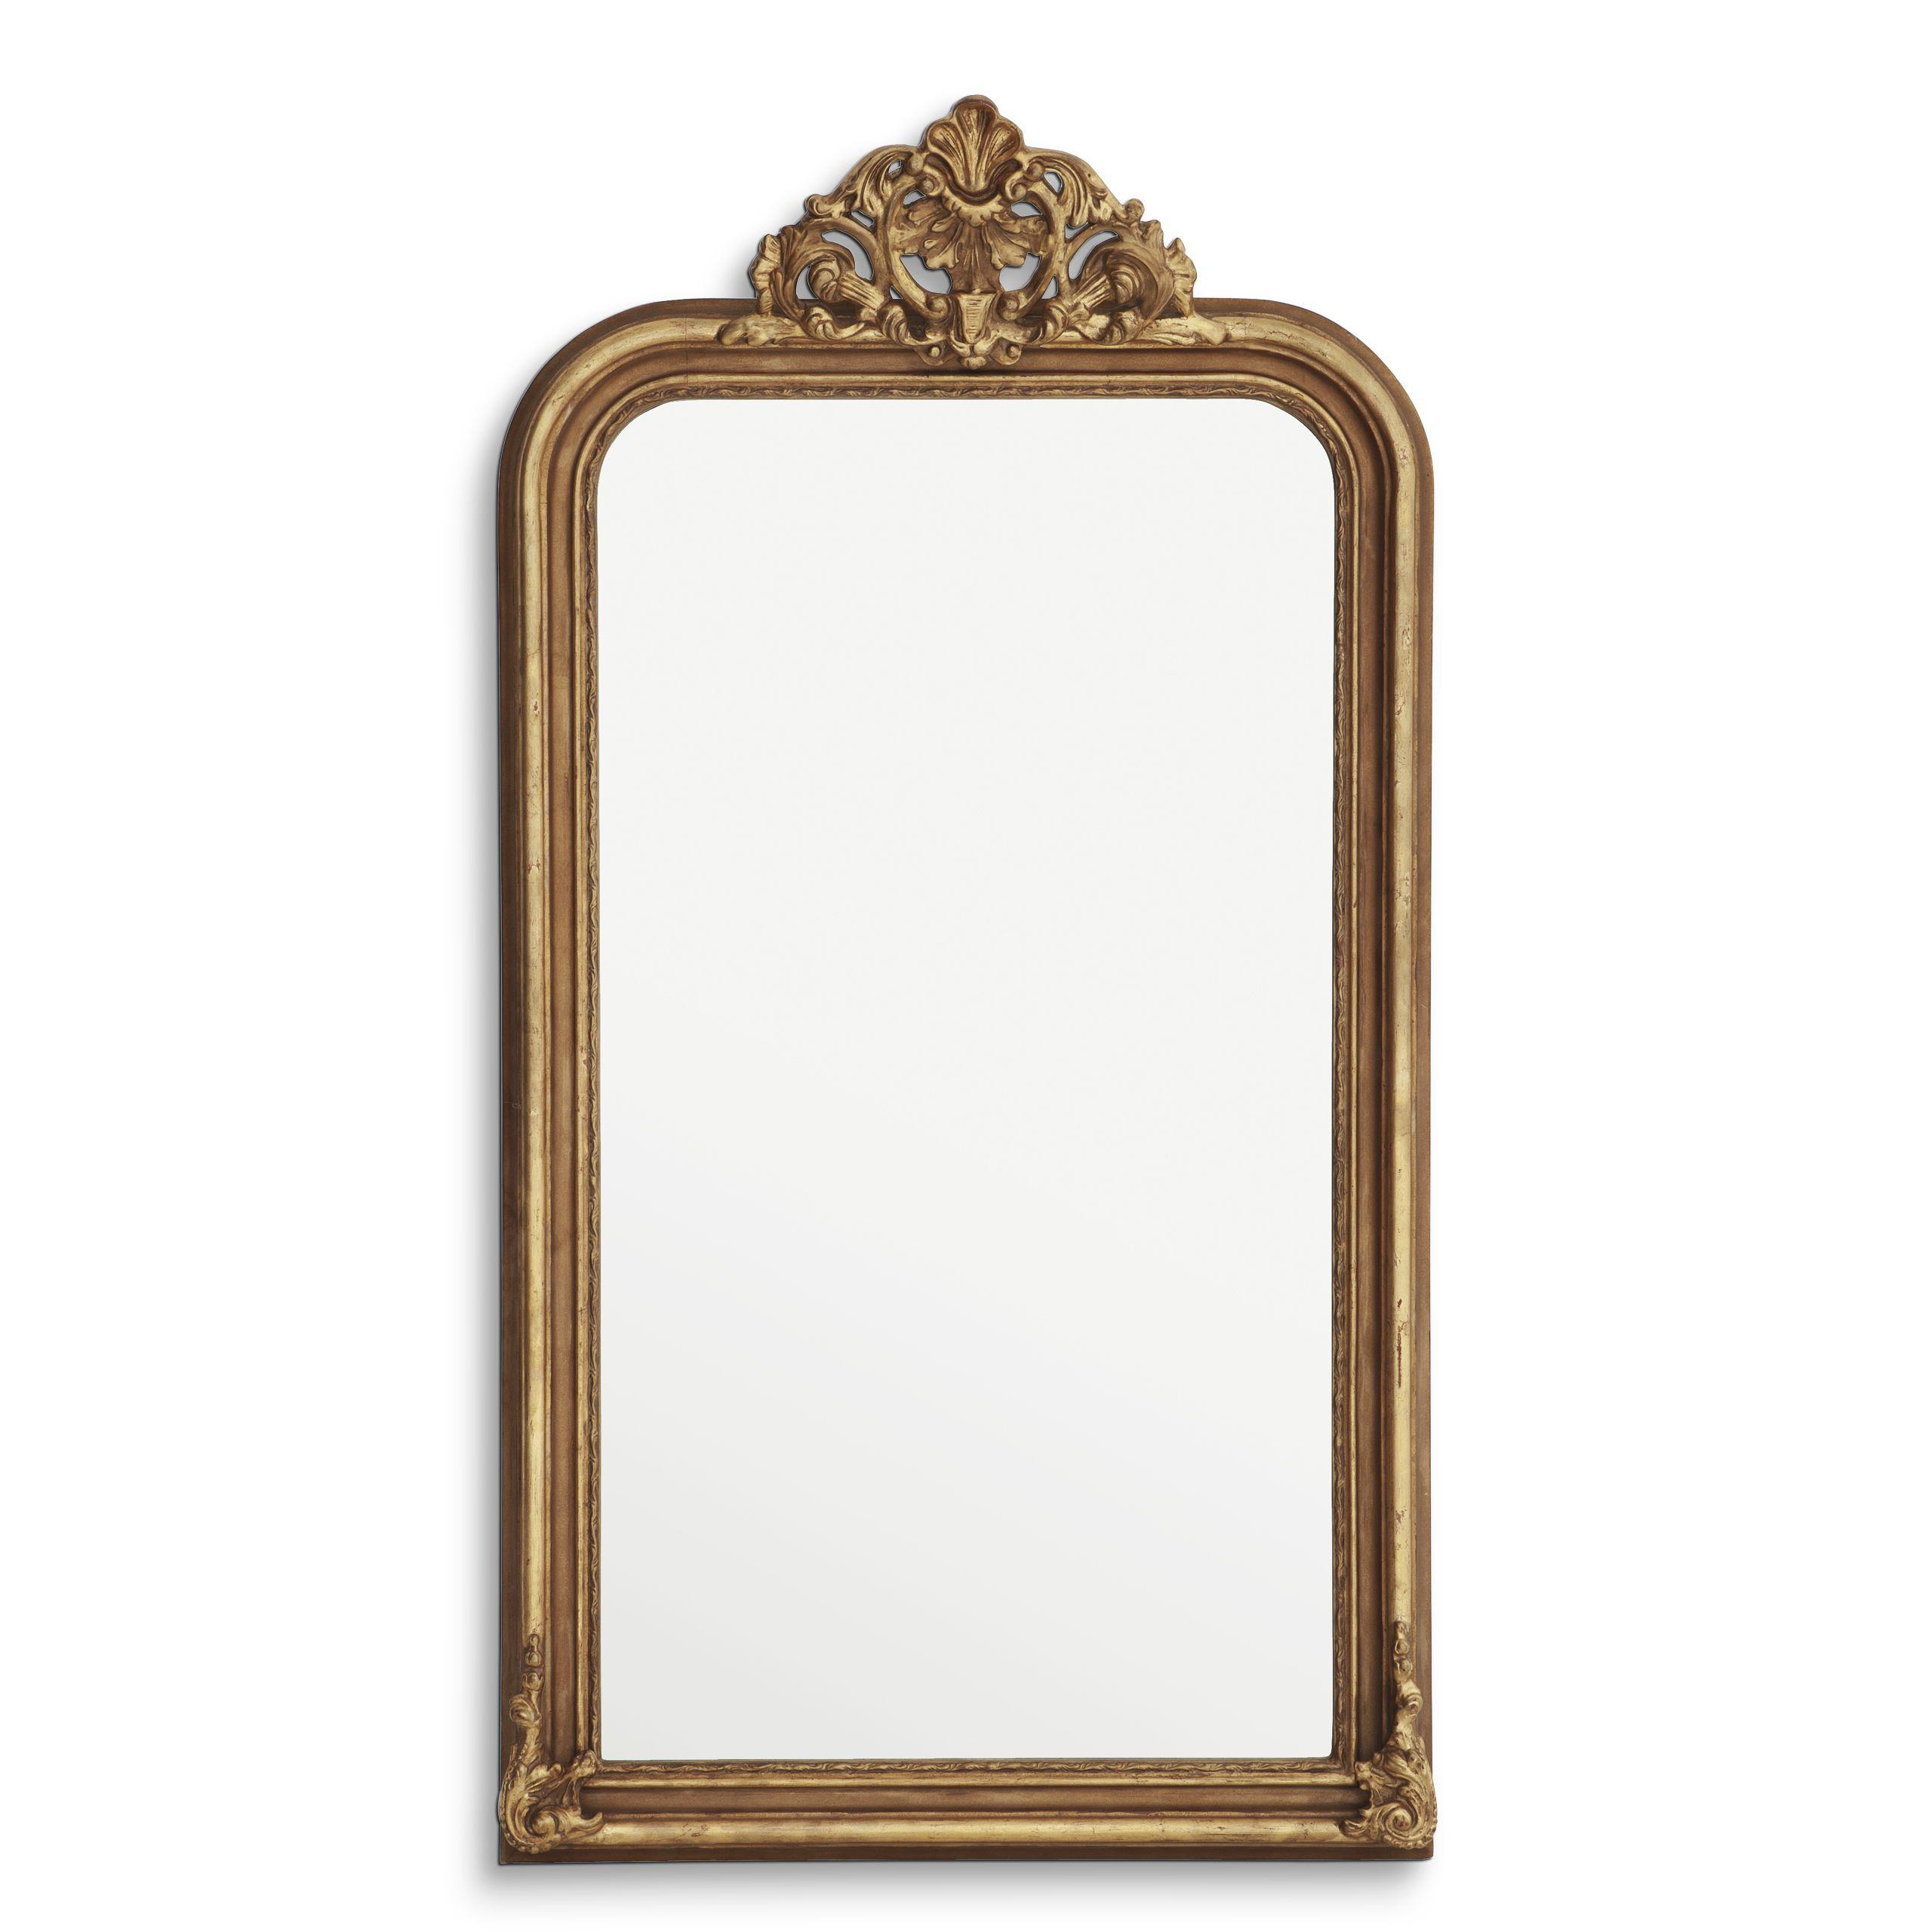 Купить Настенное зеркало Mirror Boulogne Guilded в интернет-магазине roooms.ru